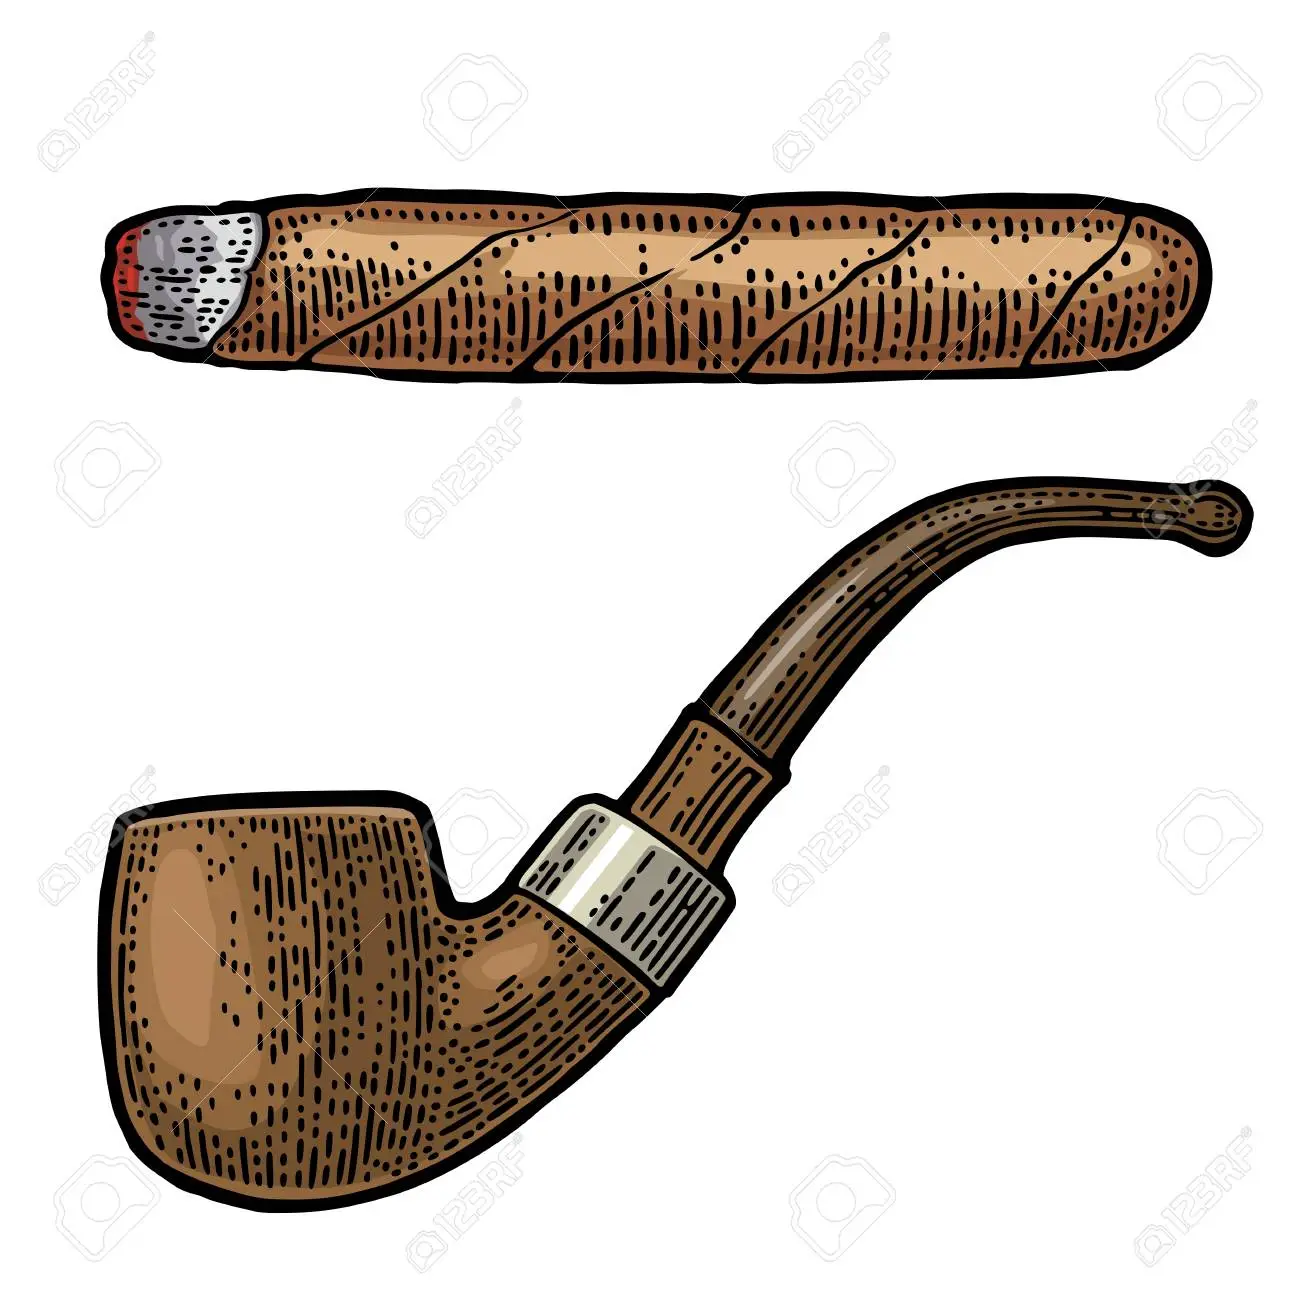 Pfeife rauchen oder Zigarre? (Tabak, Tabakwaren, Zigarren)